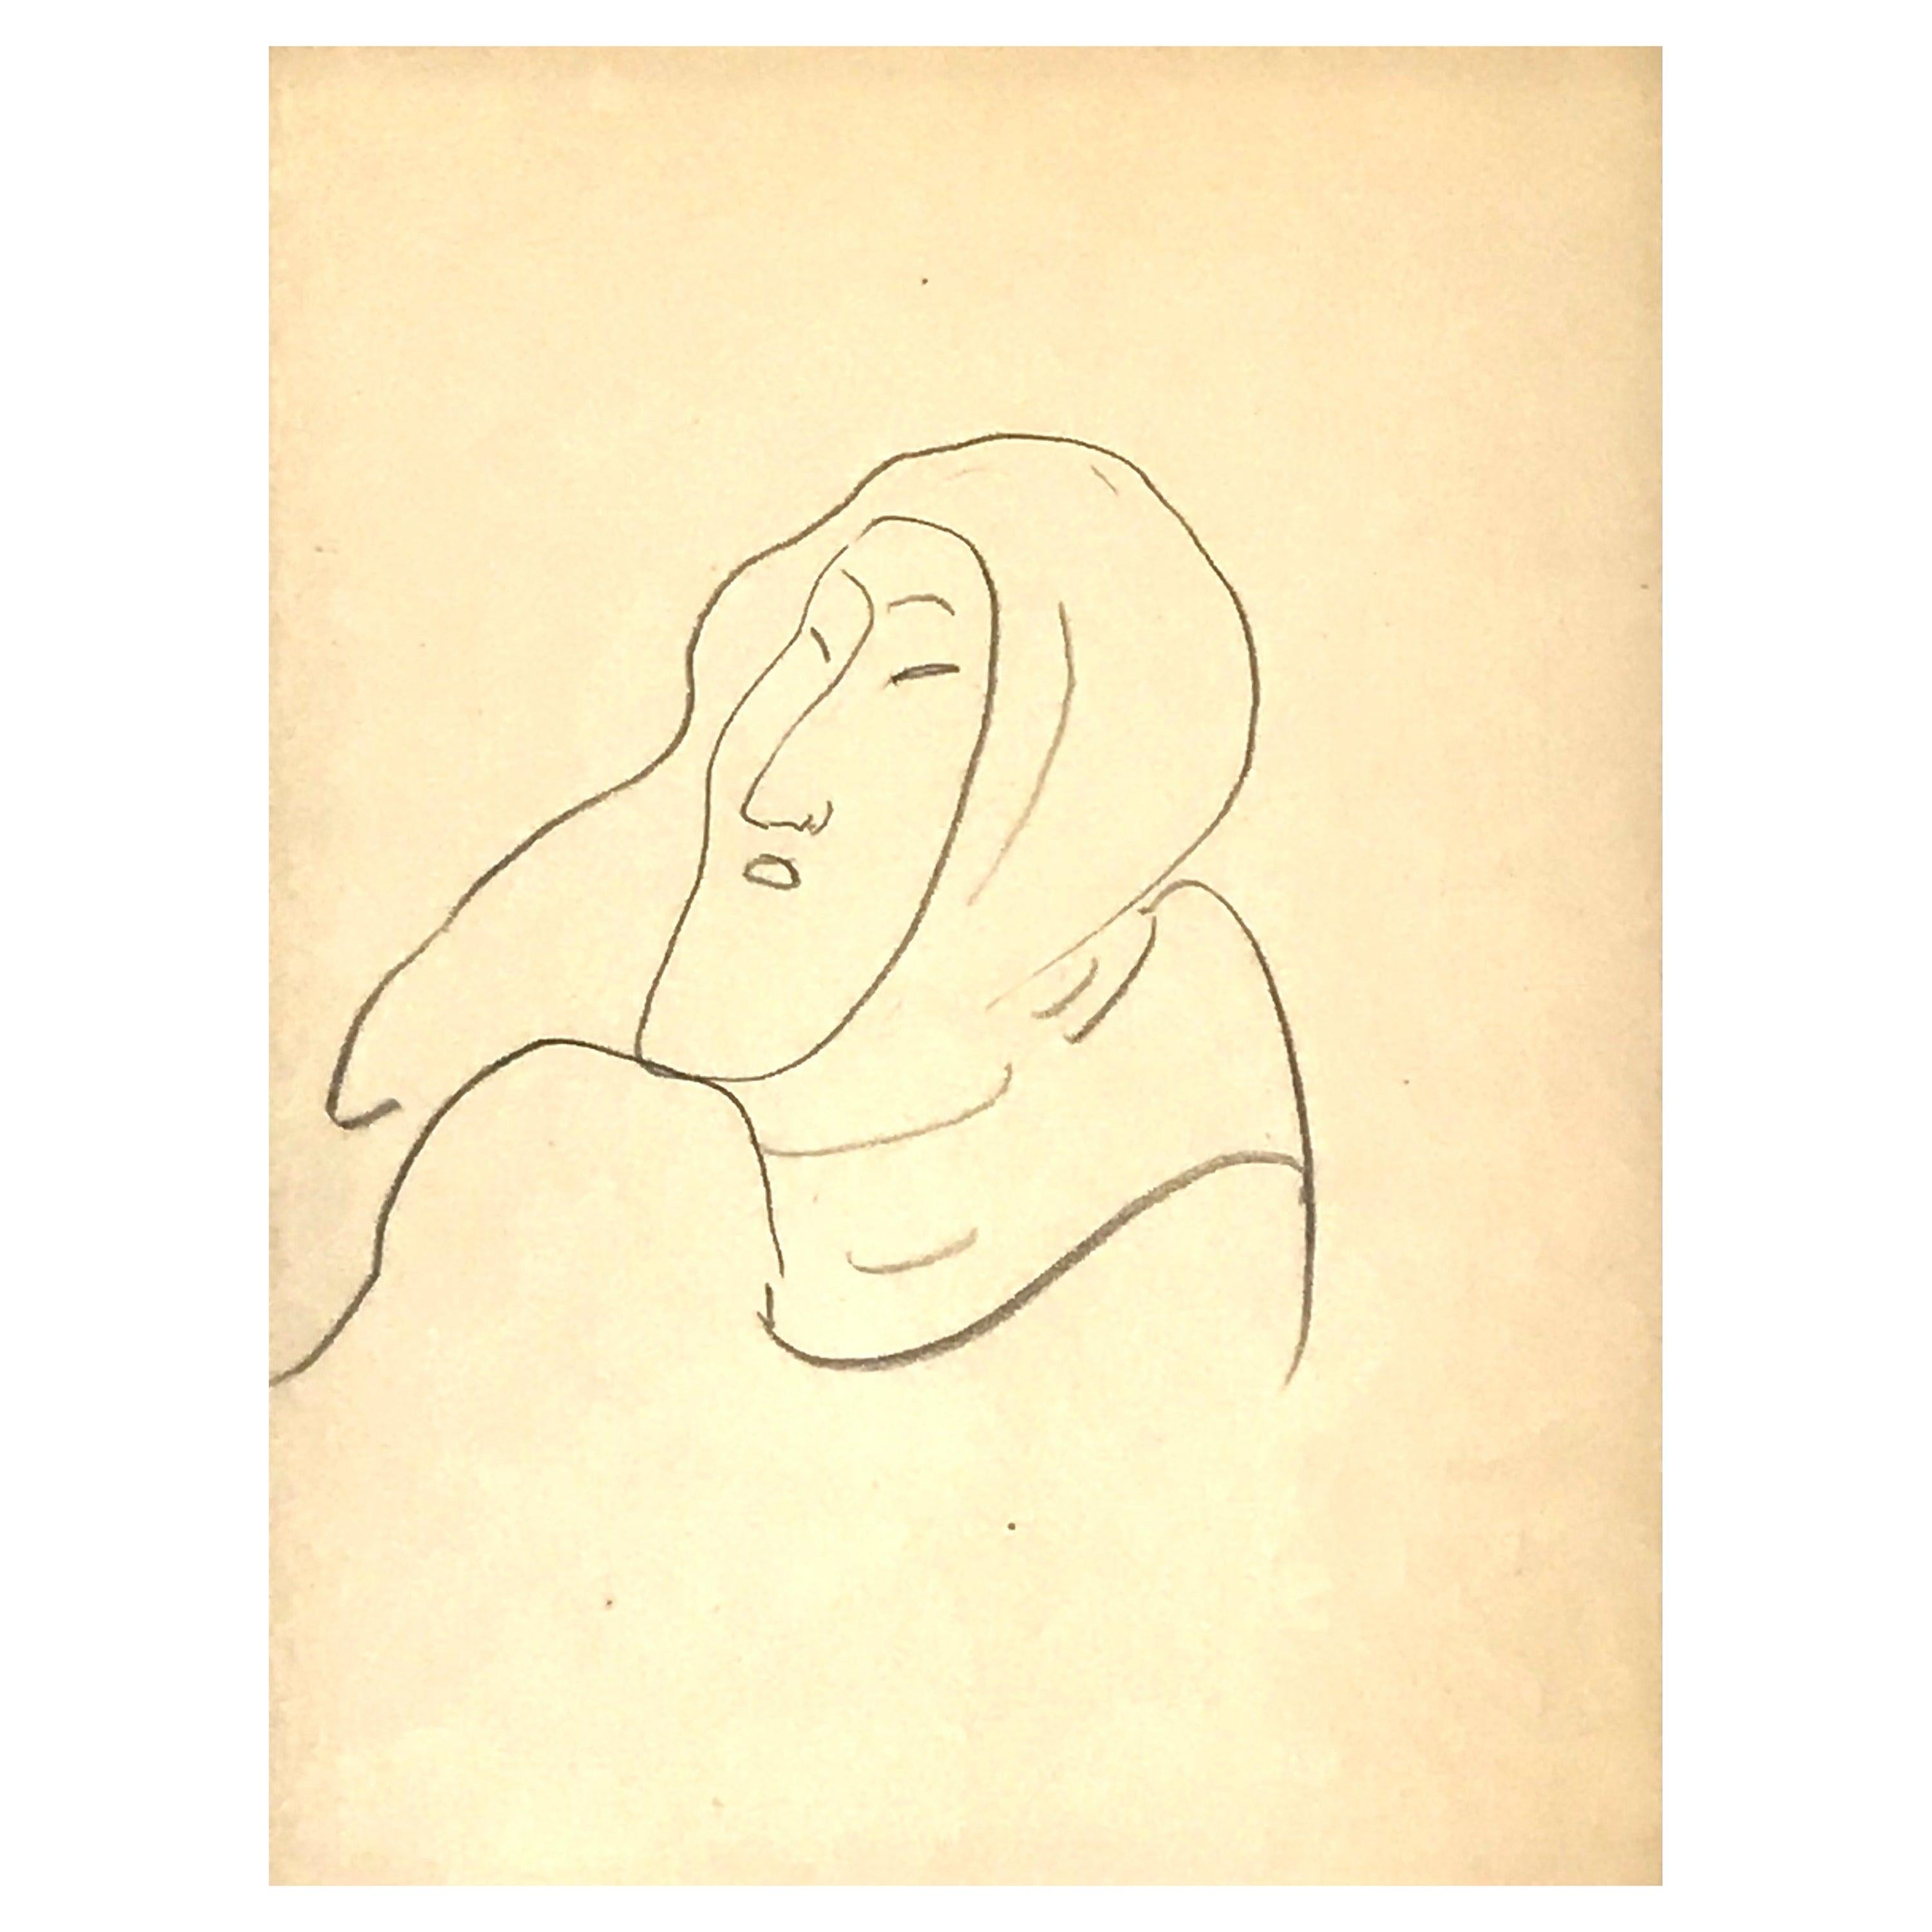 Henri Matisse Dessin d'un Eskimo COA par George Matisse.
Crayon sur papier, 1949, 
Non signée.
Taille de la feuille : 11,75 pouces x 9,2 pouces
Encadré dans un cadre de musée avec un passe-partout en lin et un verre de musée
Taille du cadre : 24.5 x